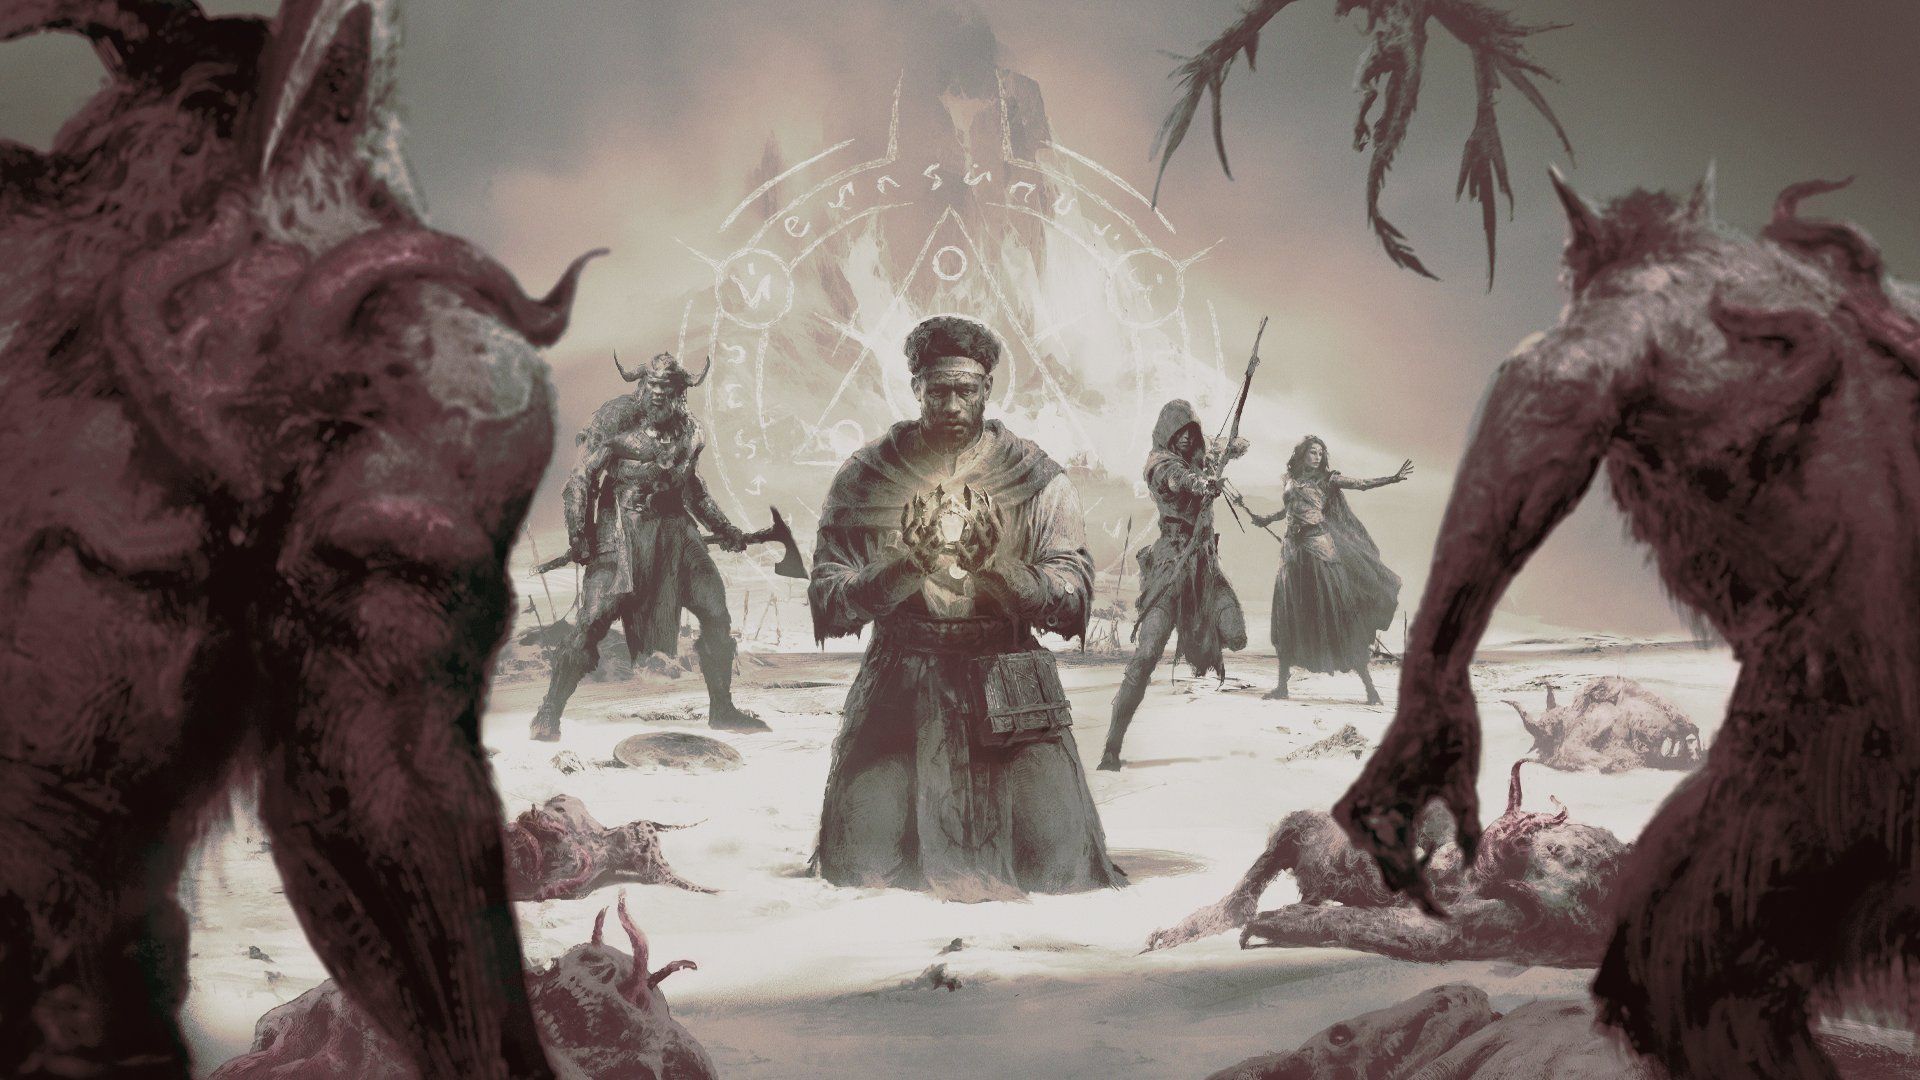 Ce qu’il faut avoir en tête pour bien profiter de la saison 1 de Diablo IV